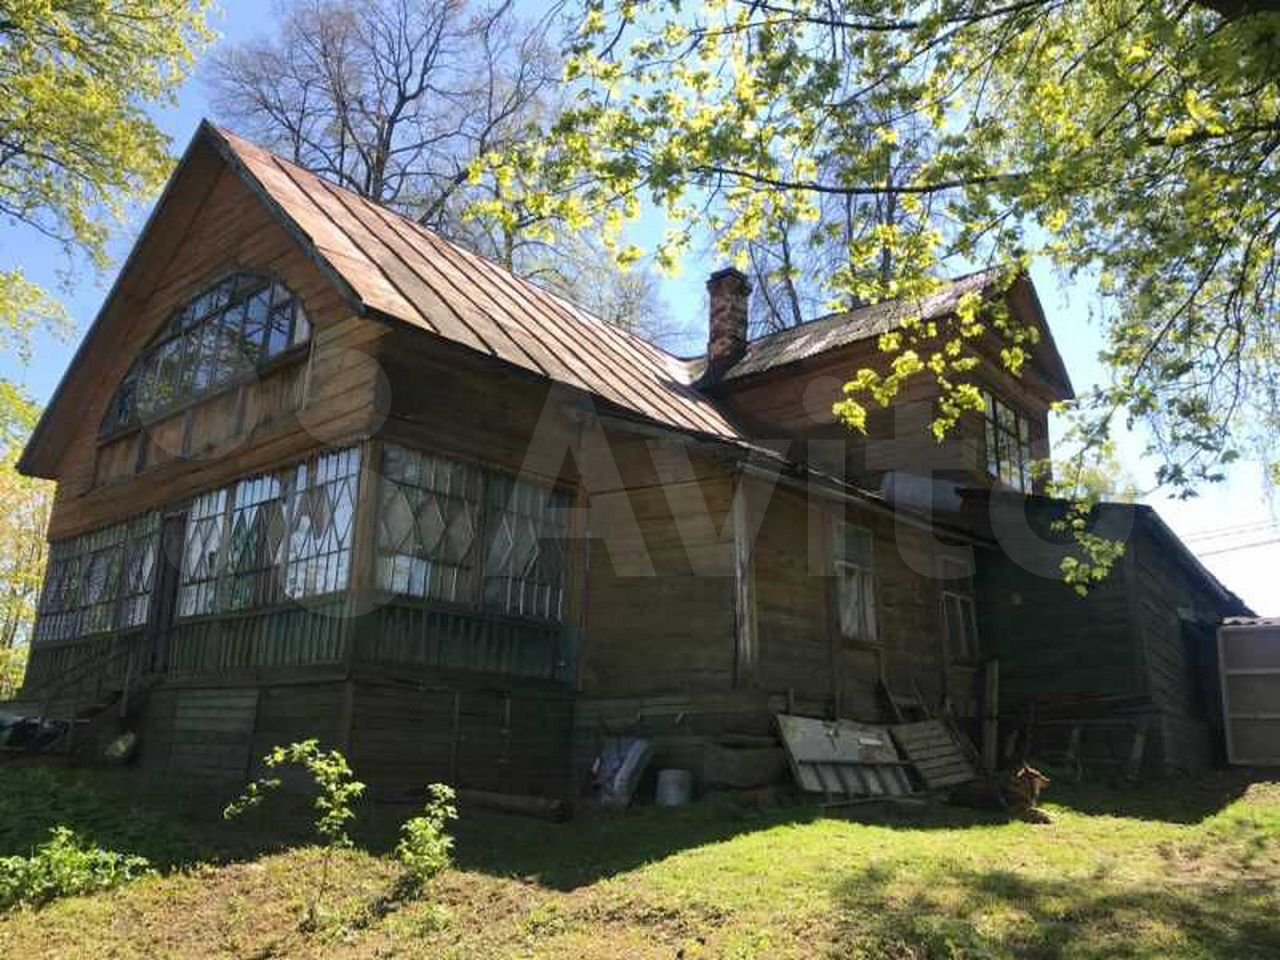 Деревянный бревенчатый дом, построенный по проекту архитектора Андрея Воронихина